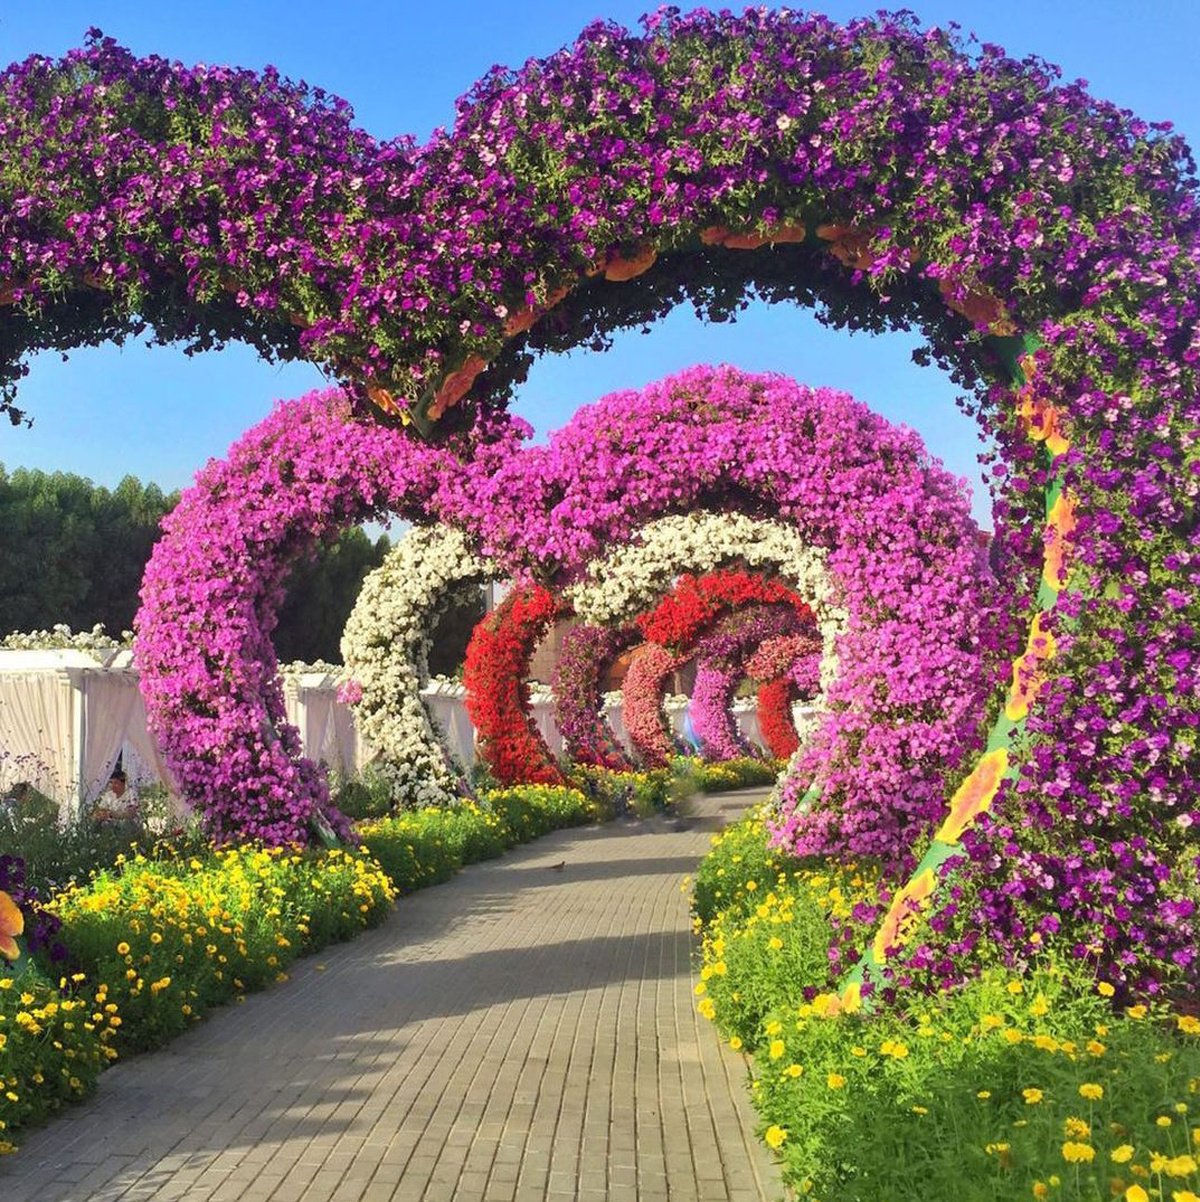 Арка для петуньи. Миракл Гарден парк. Сад чудес (Miracle Garden). Дубай Миракл Гарден Dubai Miracle Garden. Парк цветов Миракл Гарден.